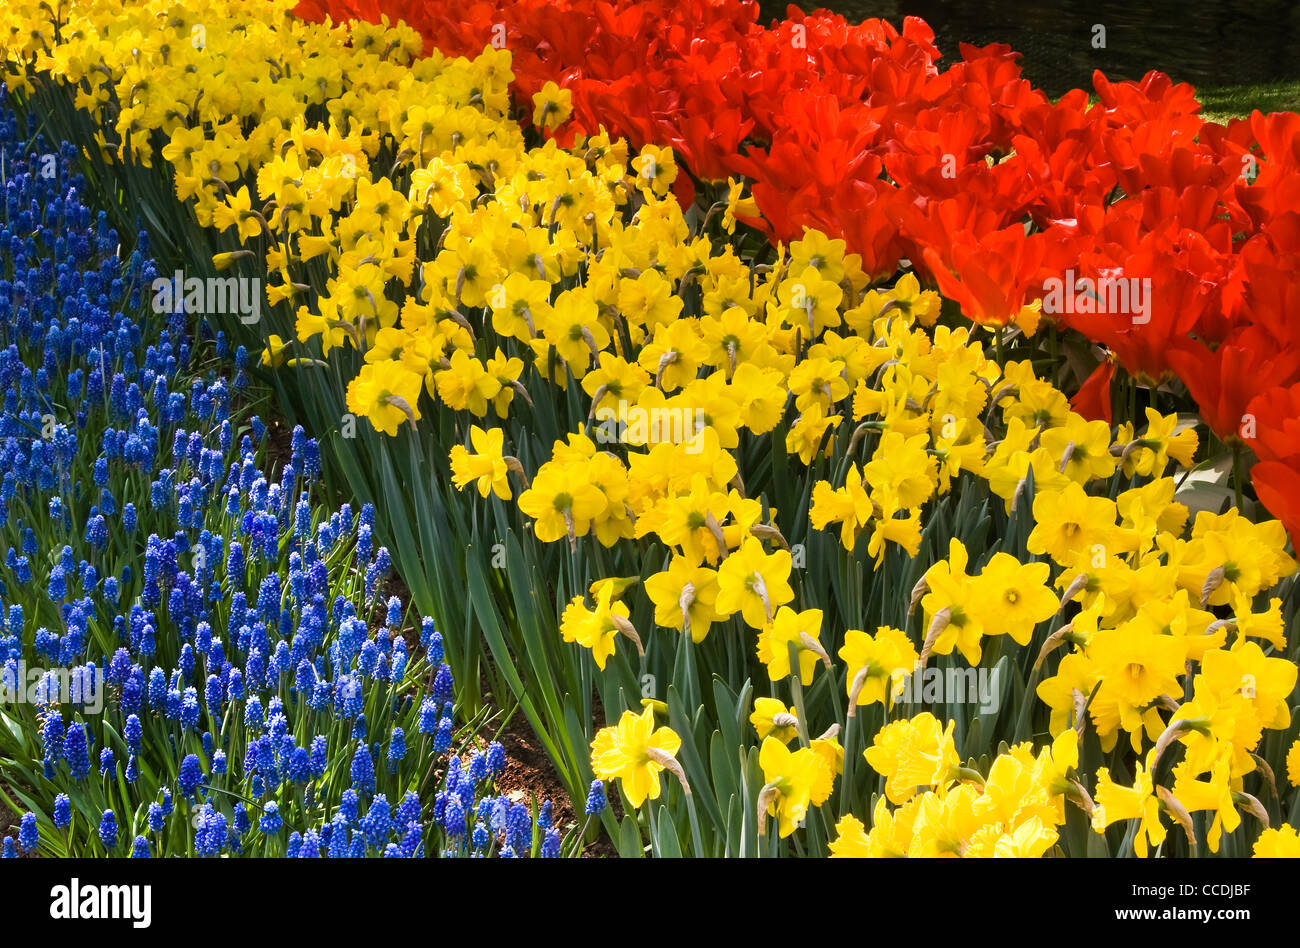 Tulpen, Narzissen und gemeinsame Traubenhyazinthen - Frühlingsblumen in rot, gelb und blau Stockfoto